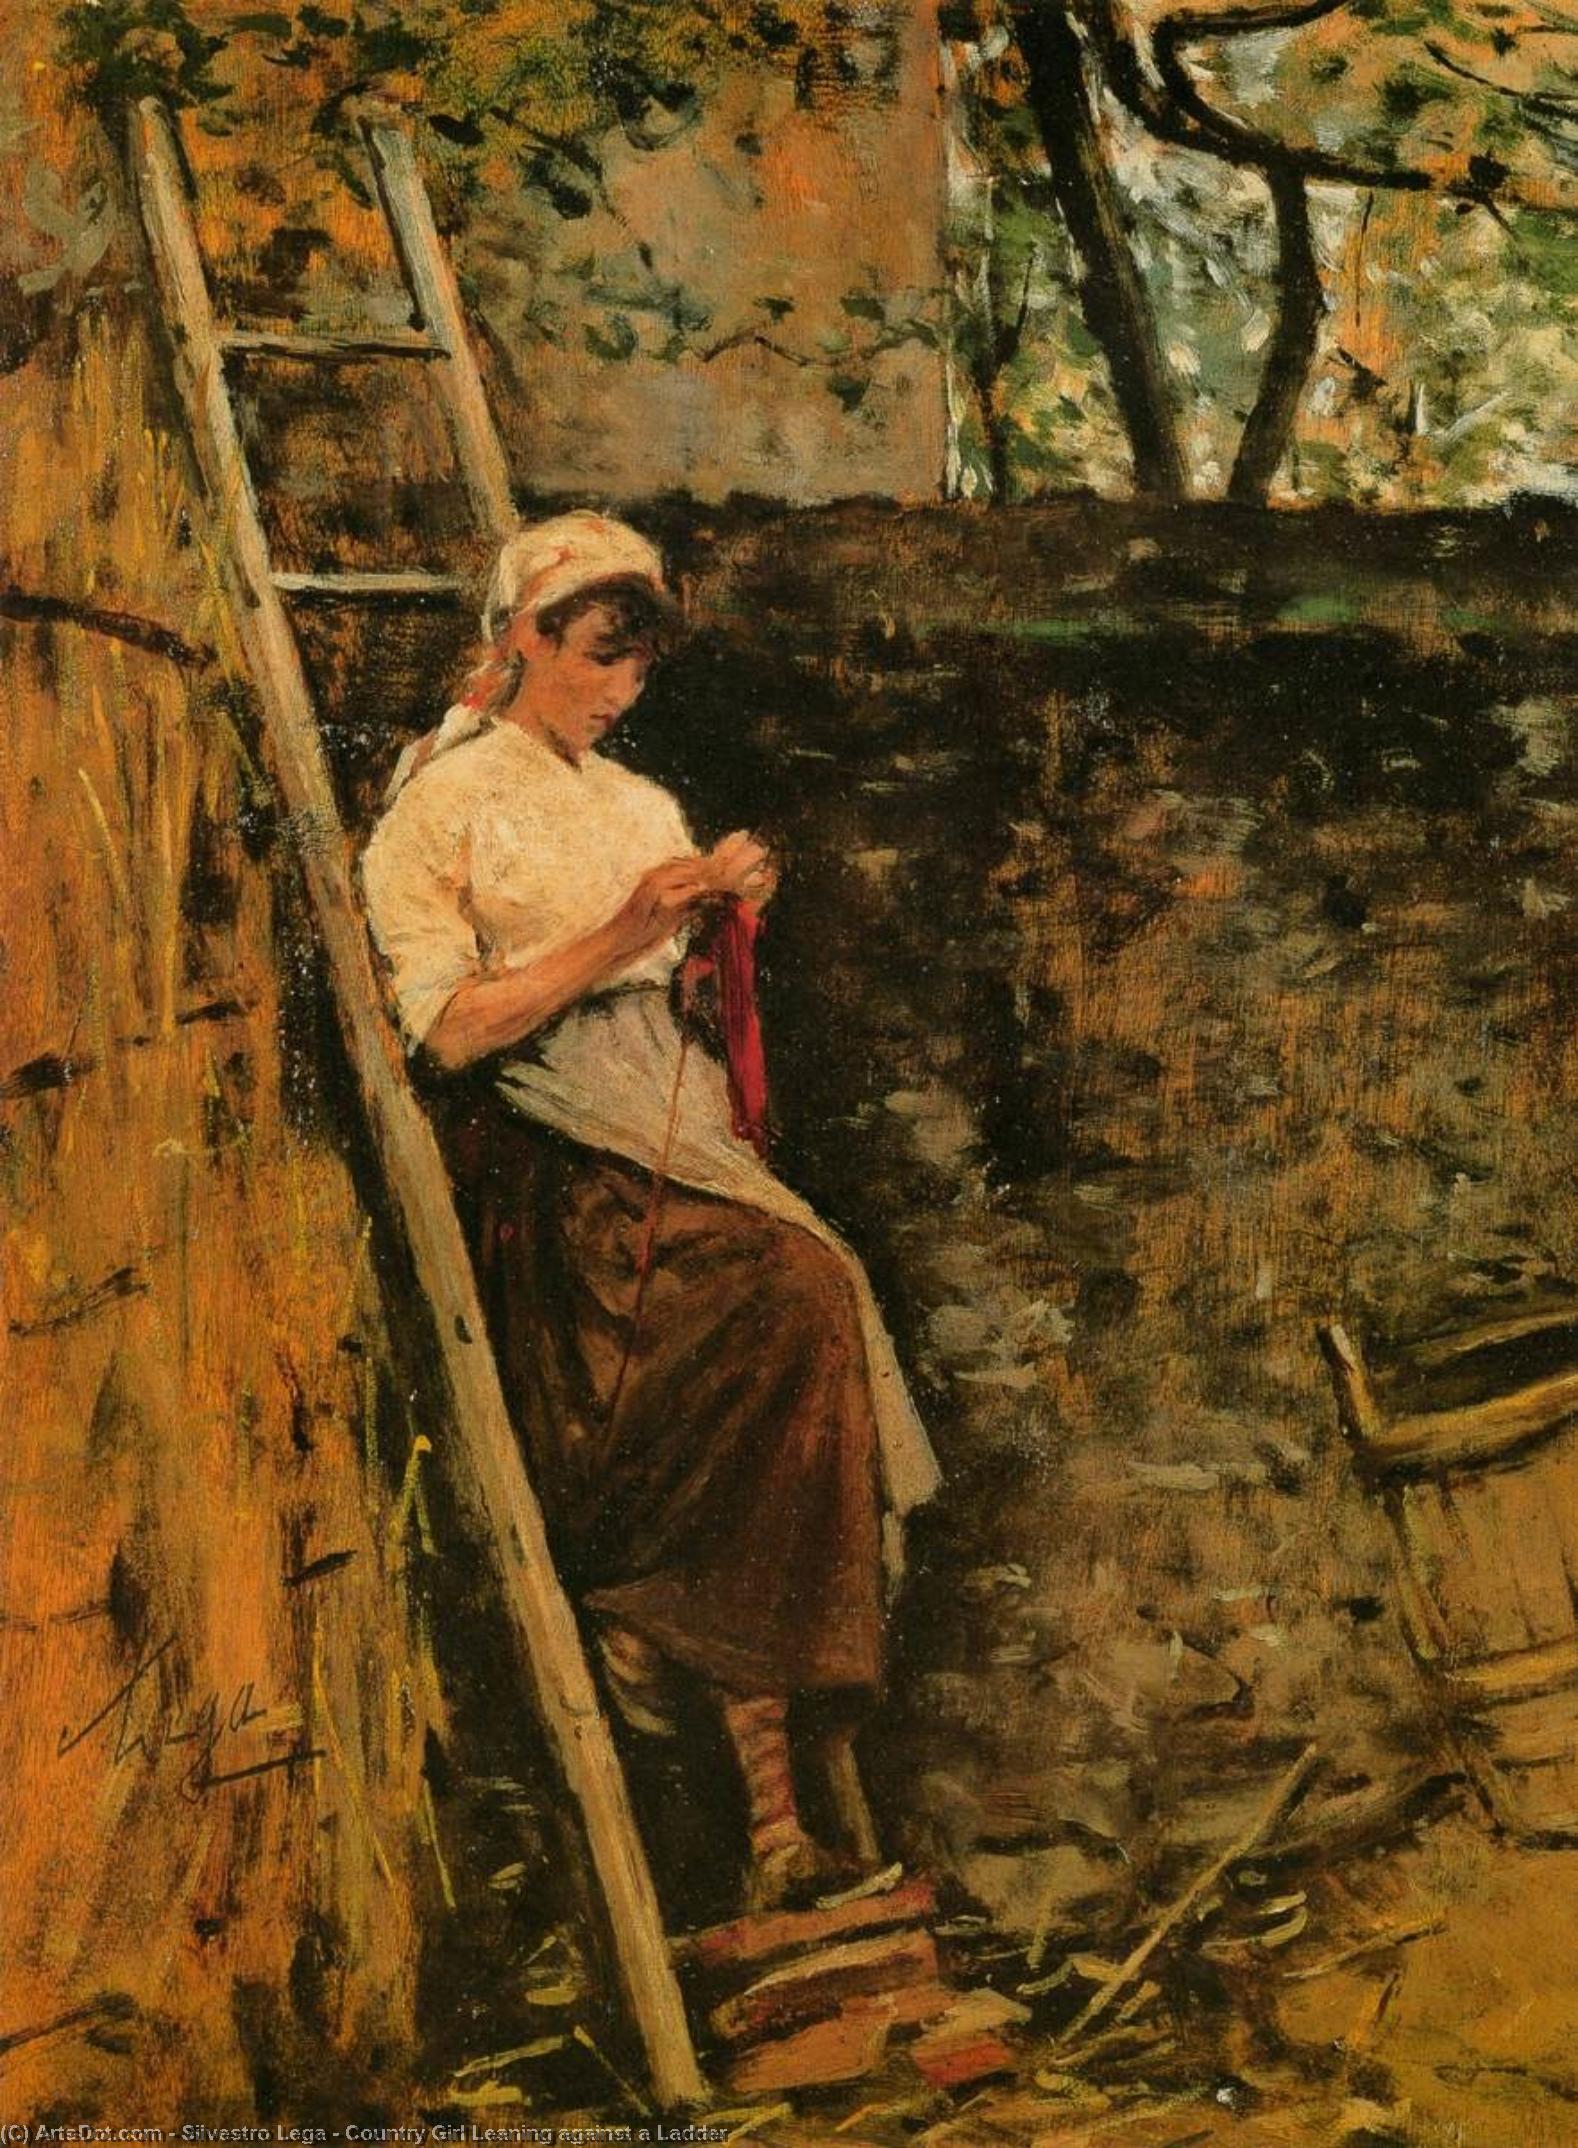 Wikoo.org - موسوعة الفنون الجميلة - اللوحة، العمل الفني Silvestro Lega - Country Girl Leaning against a Ladder